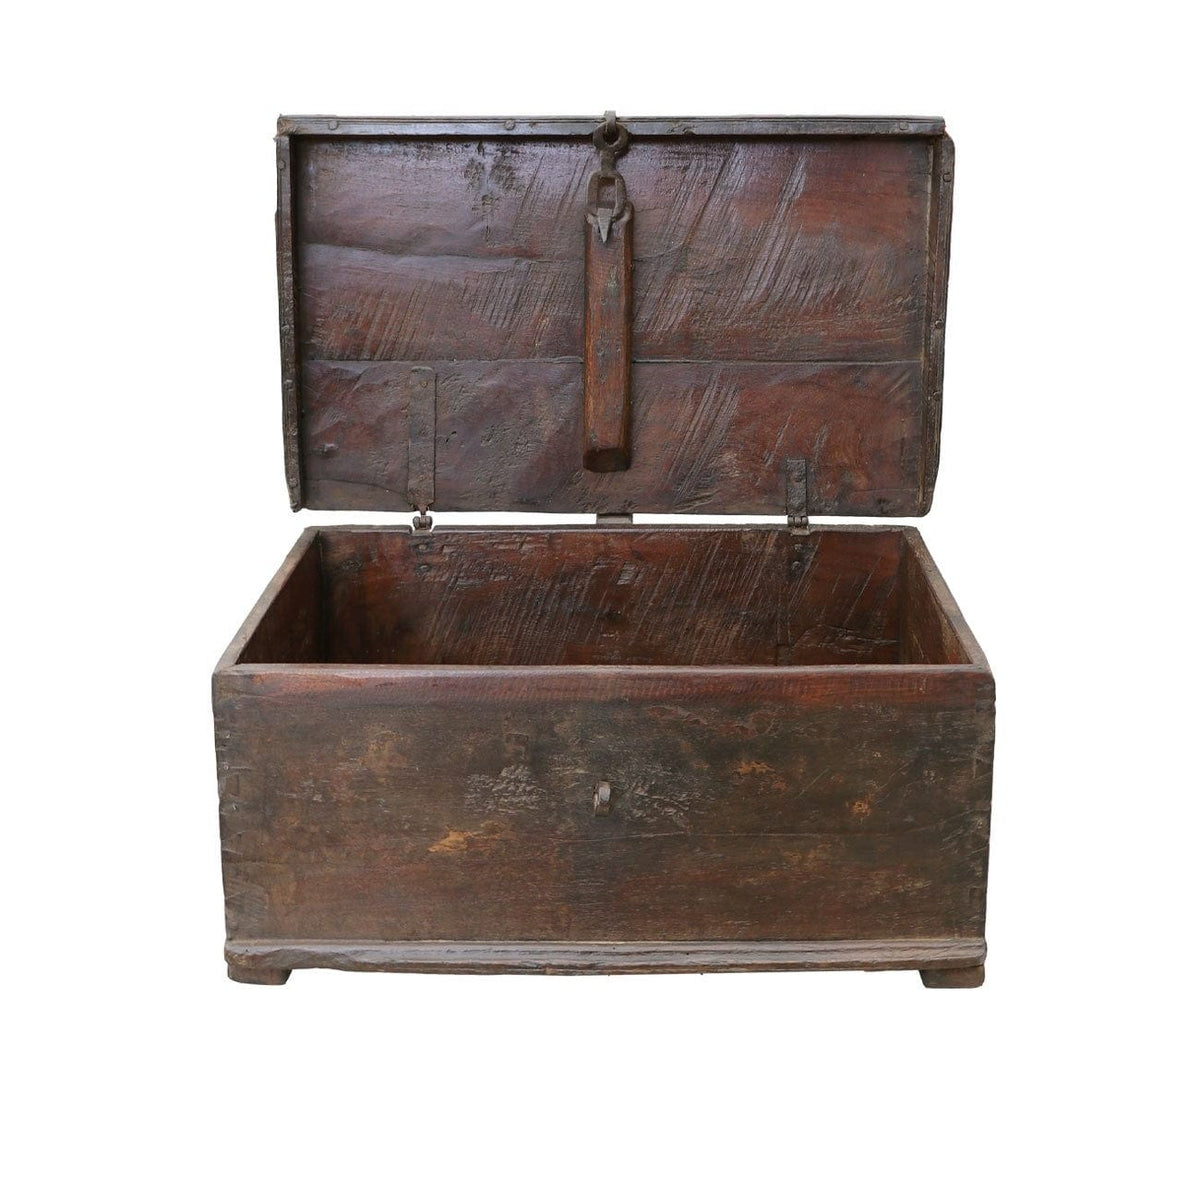 Original Lidded Wooden Box